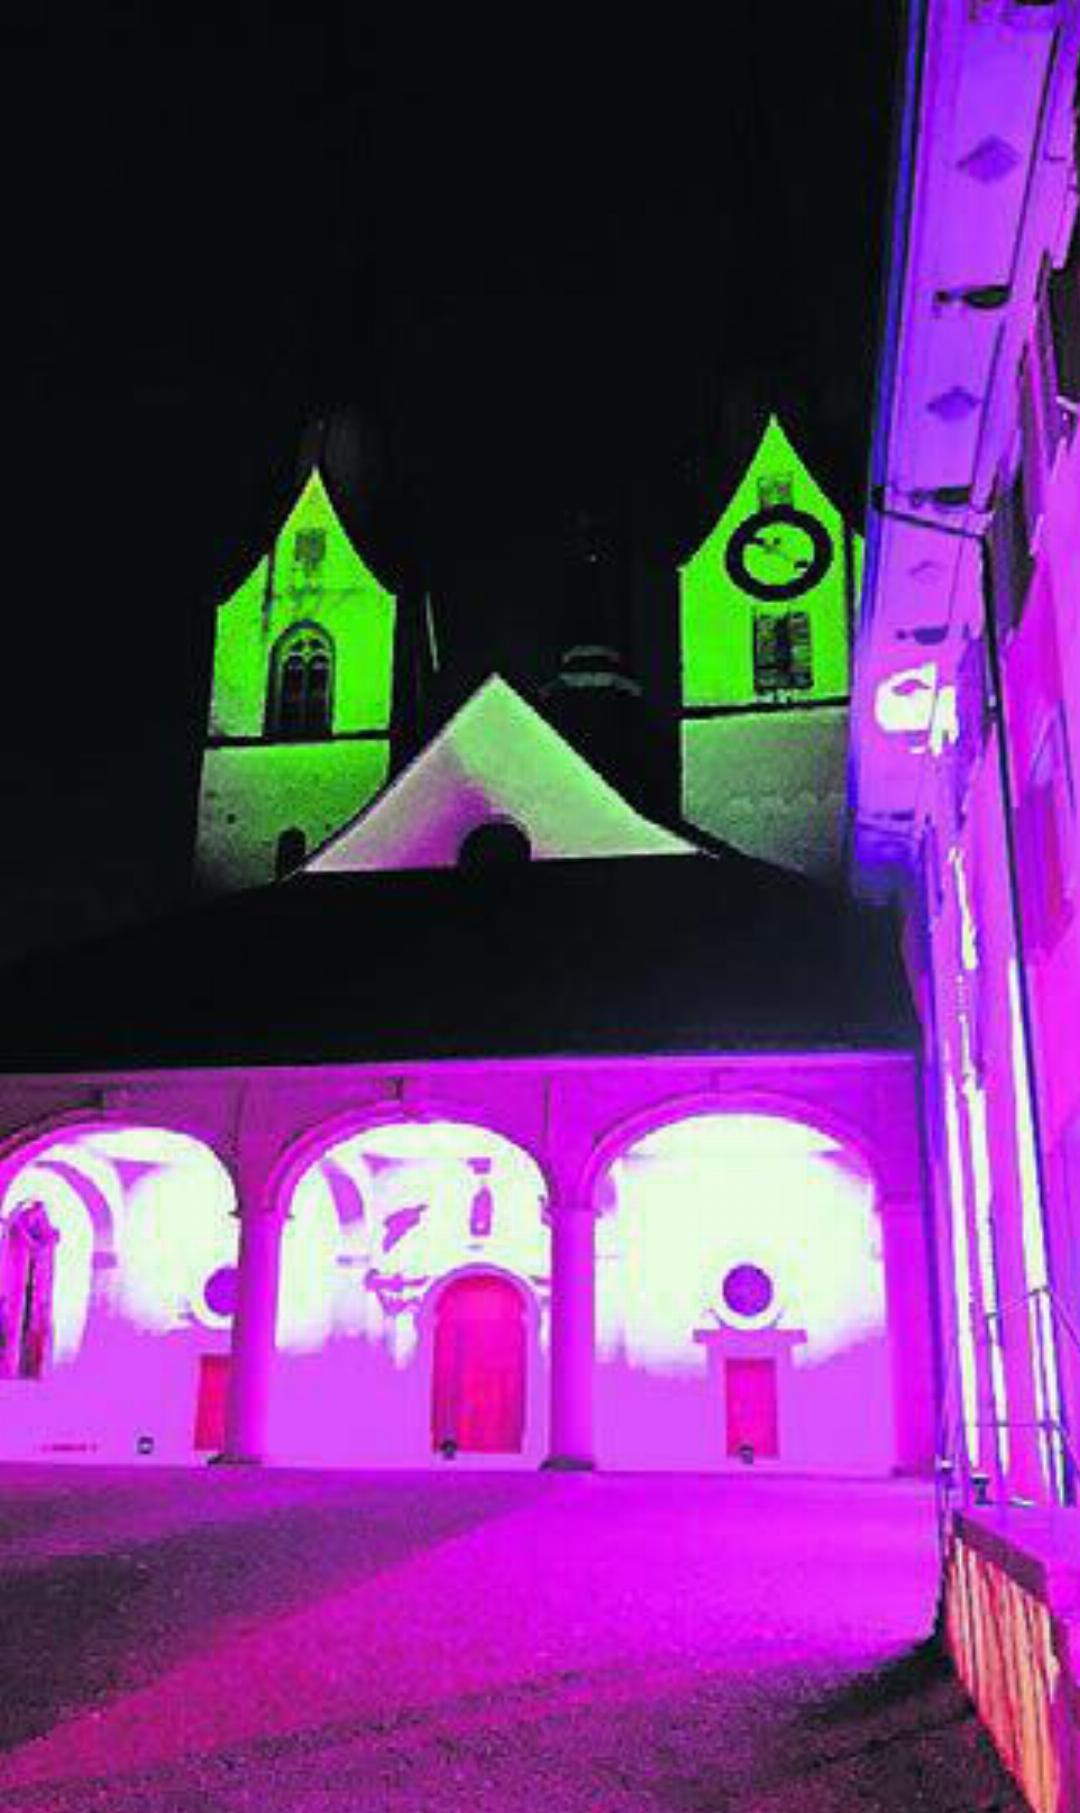 In mystischen Farben leuchtet das Kloster am Abend.